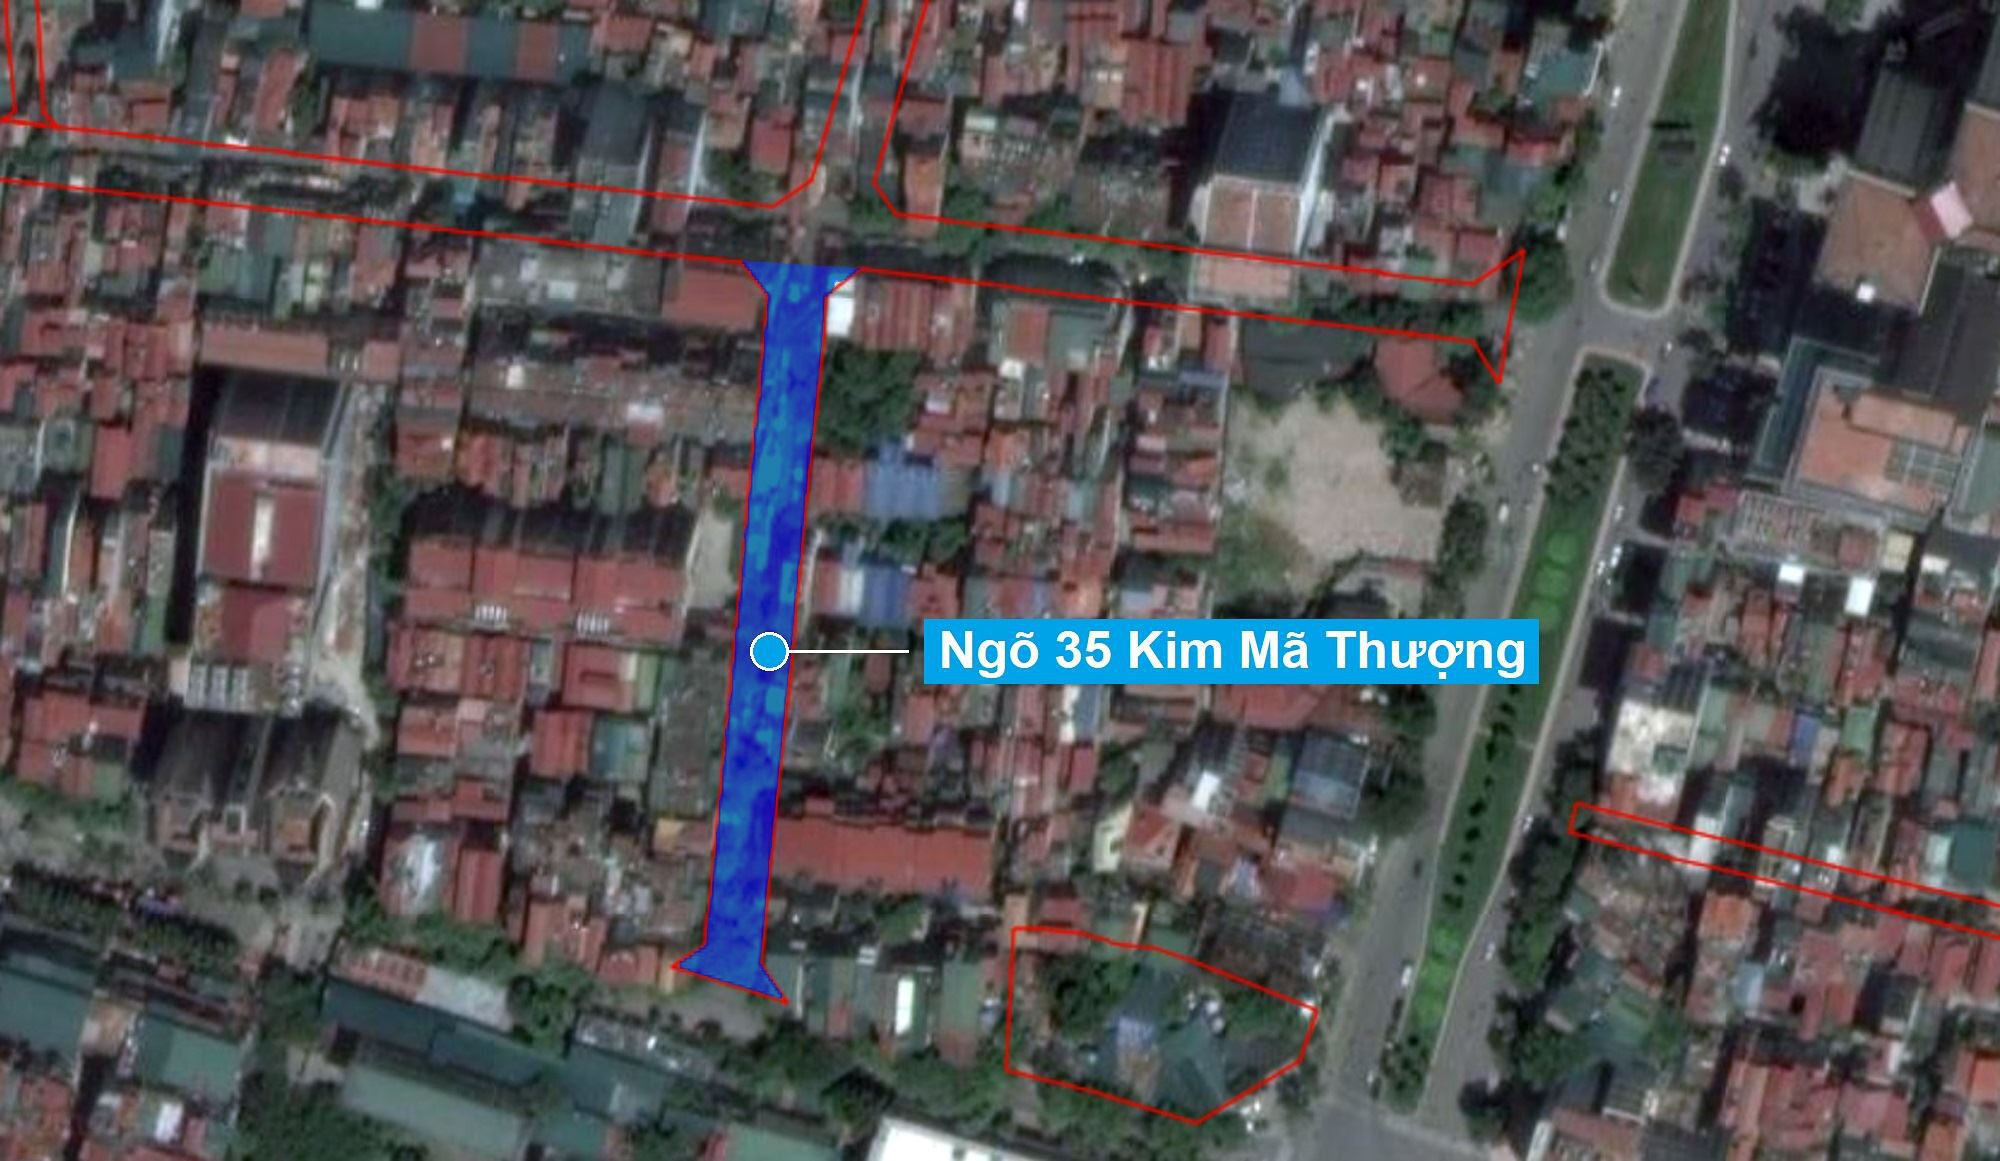 Sơ đồ khu đất sắp thu hồi mở đường ở phường Cống Vị nhìn trên ảnh vệ tinh. (Nguồn ảnh: Bản đồ sử dụng đất TP Hà Nội năm 2020)